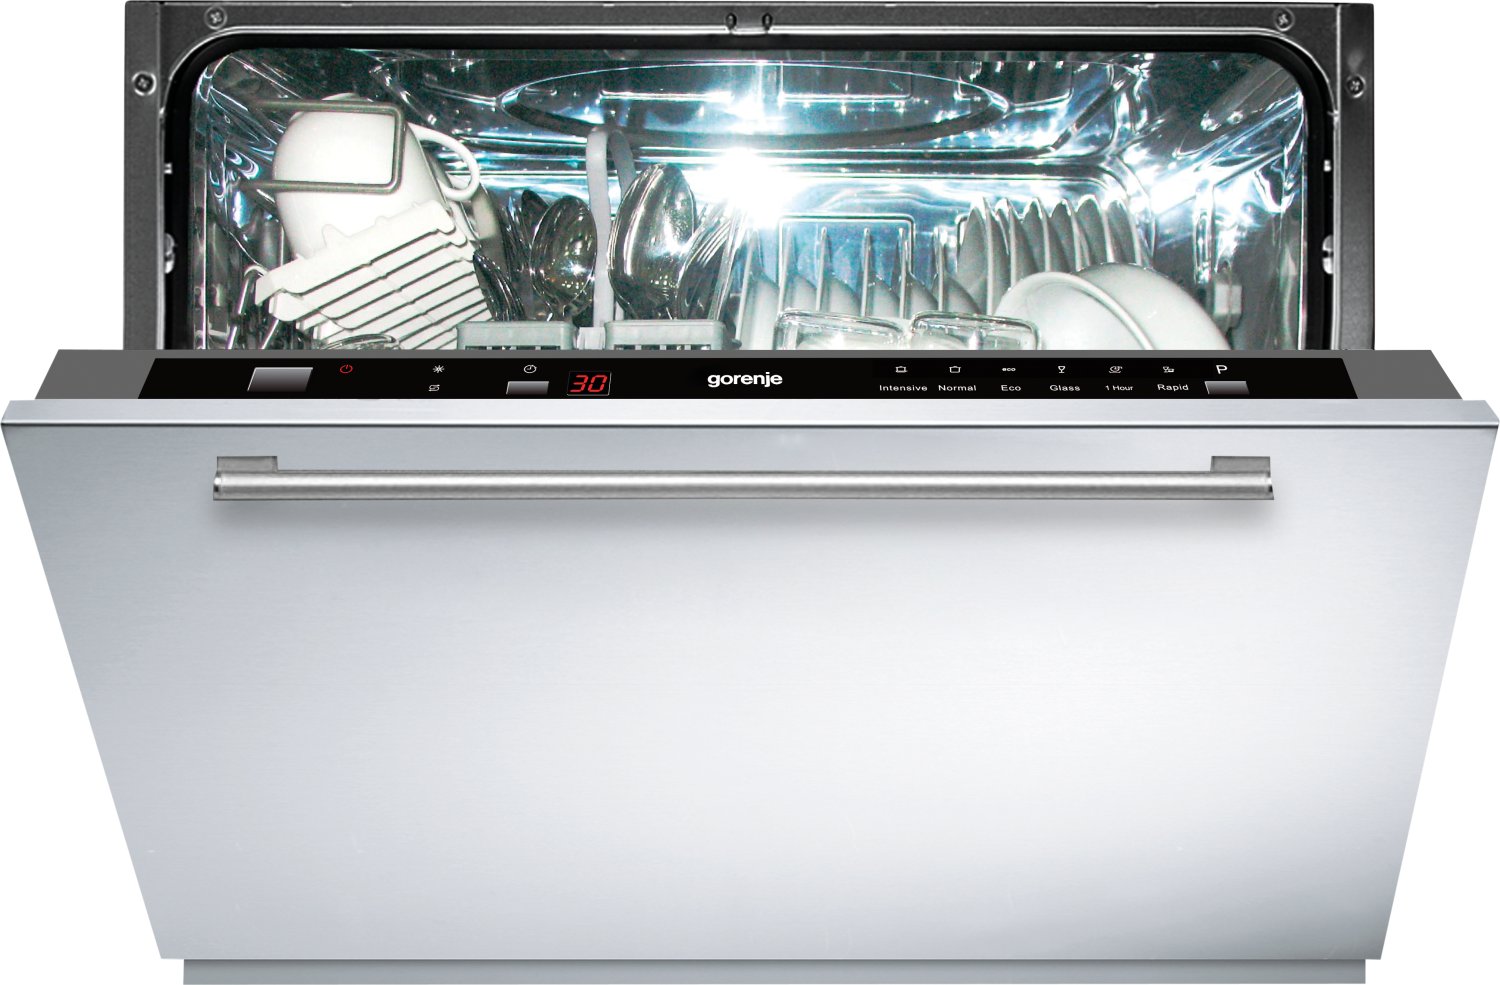 Встроенная посудомоечная машина 60 см горенье. Korting KDF 2050 W. Встраиваемая посудомоечная машина Gorenje gv61211. Посудомойка Gorenje встраиваемая. Посудомоечная машина Gorenje gs531e10w.